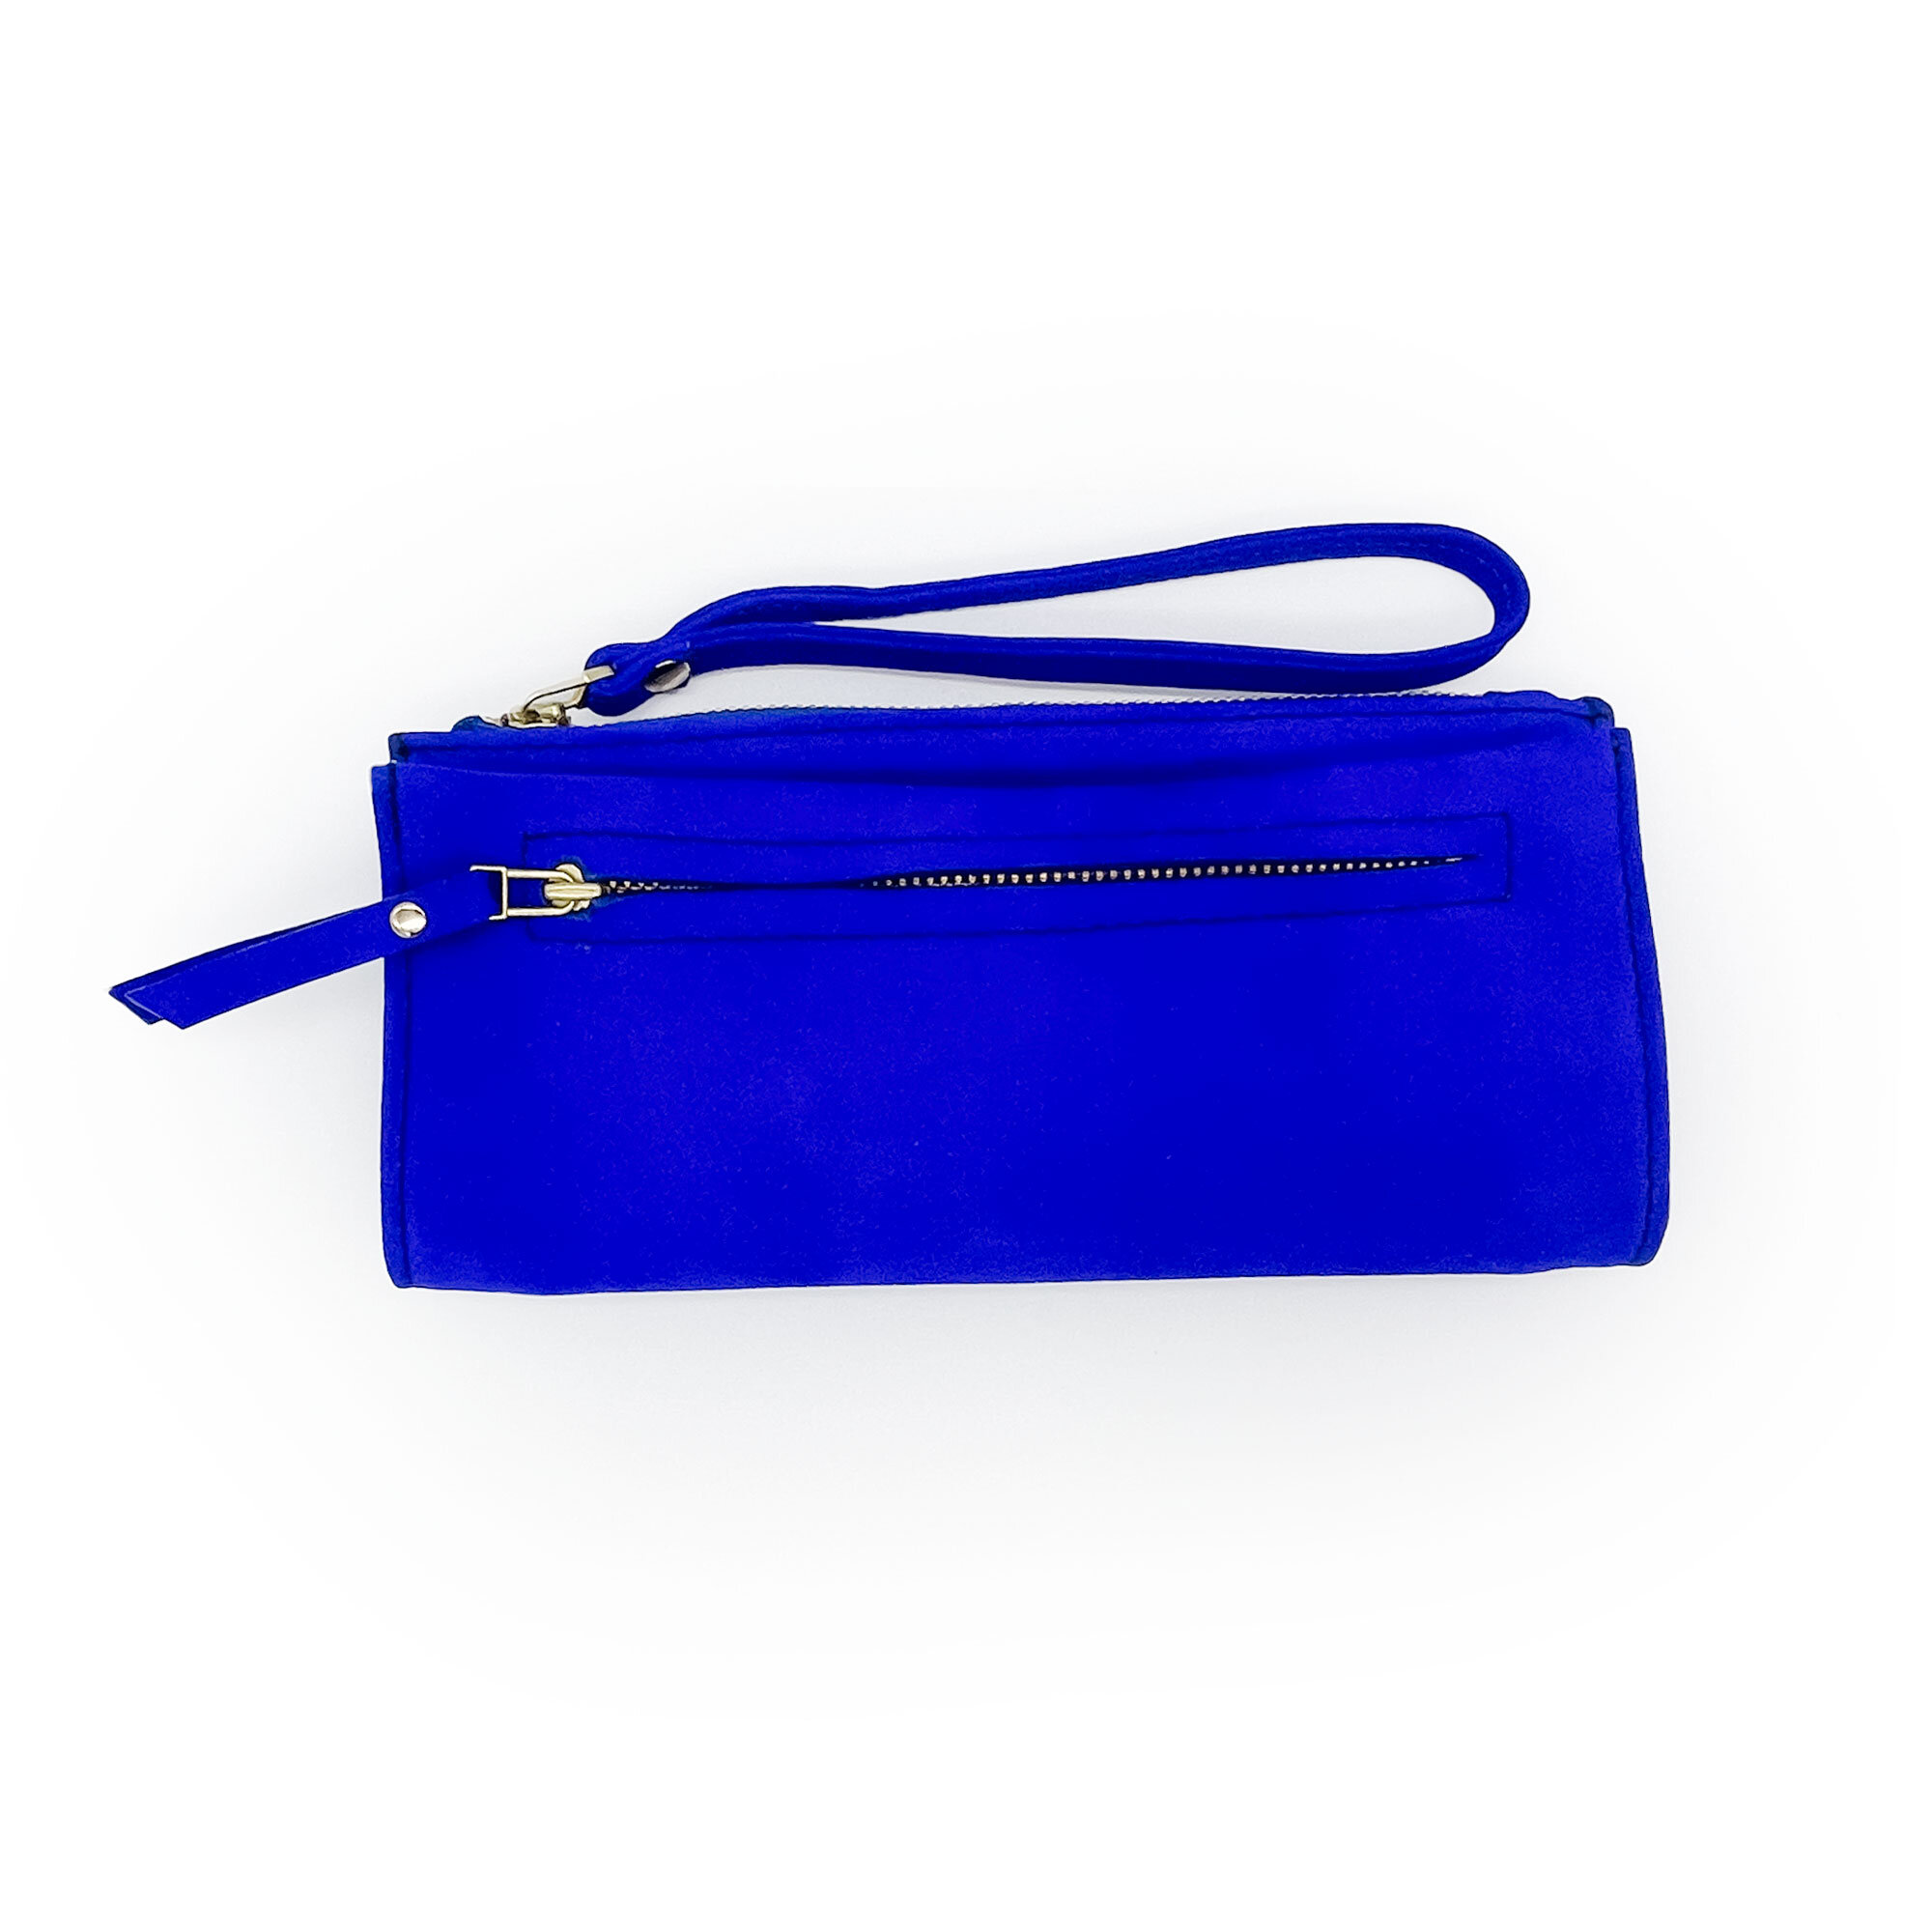 Handbags & Wallets - epanoui gifts